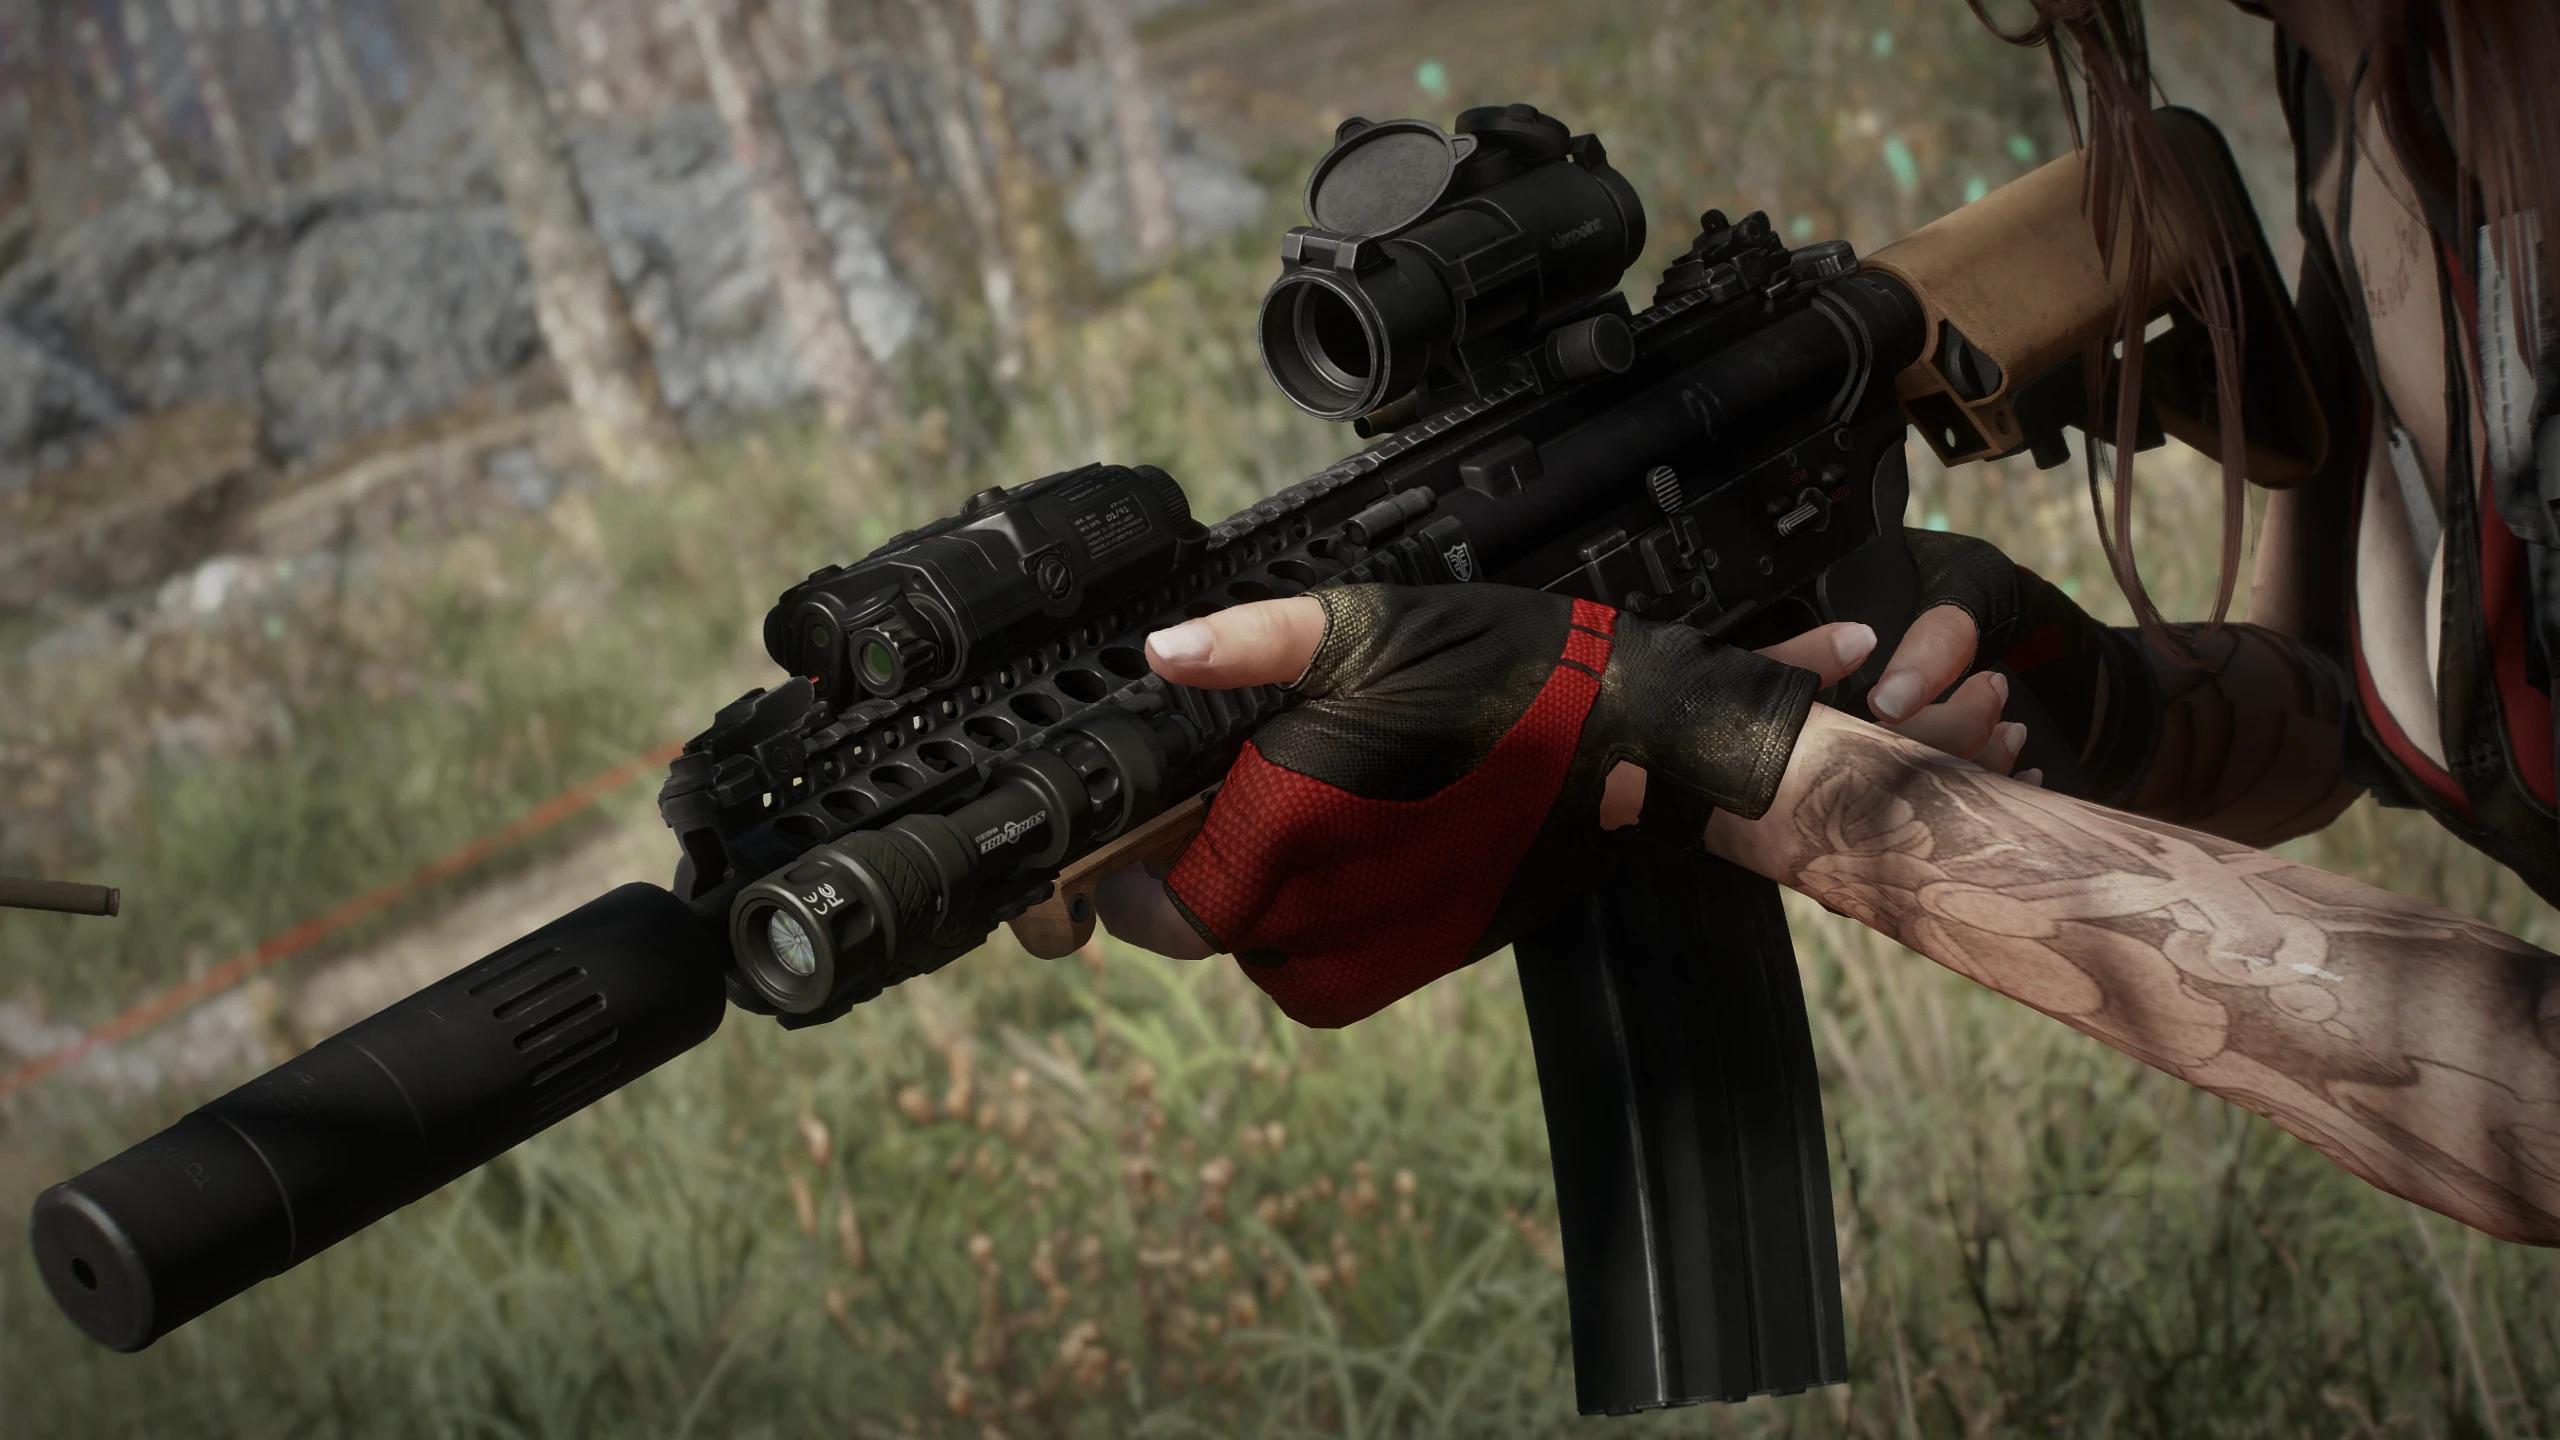 Fallout 4 r91 assault rifle от c1ph3rr фото 116